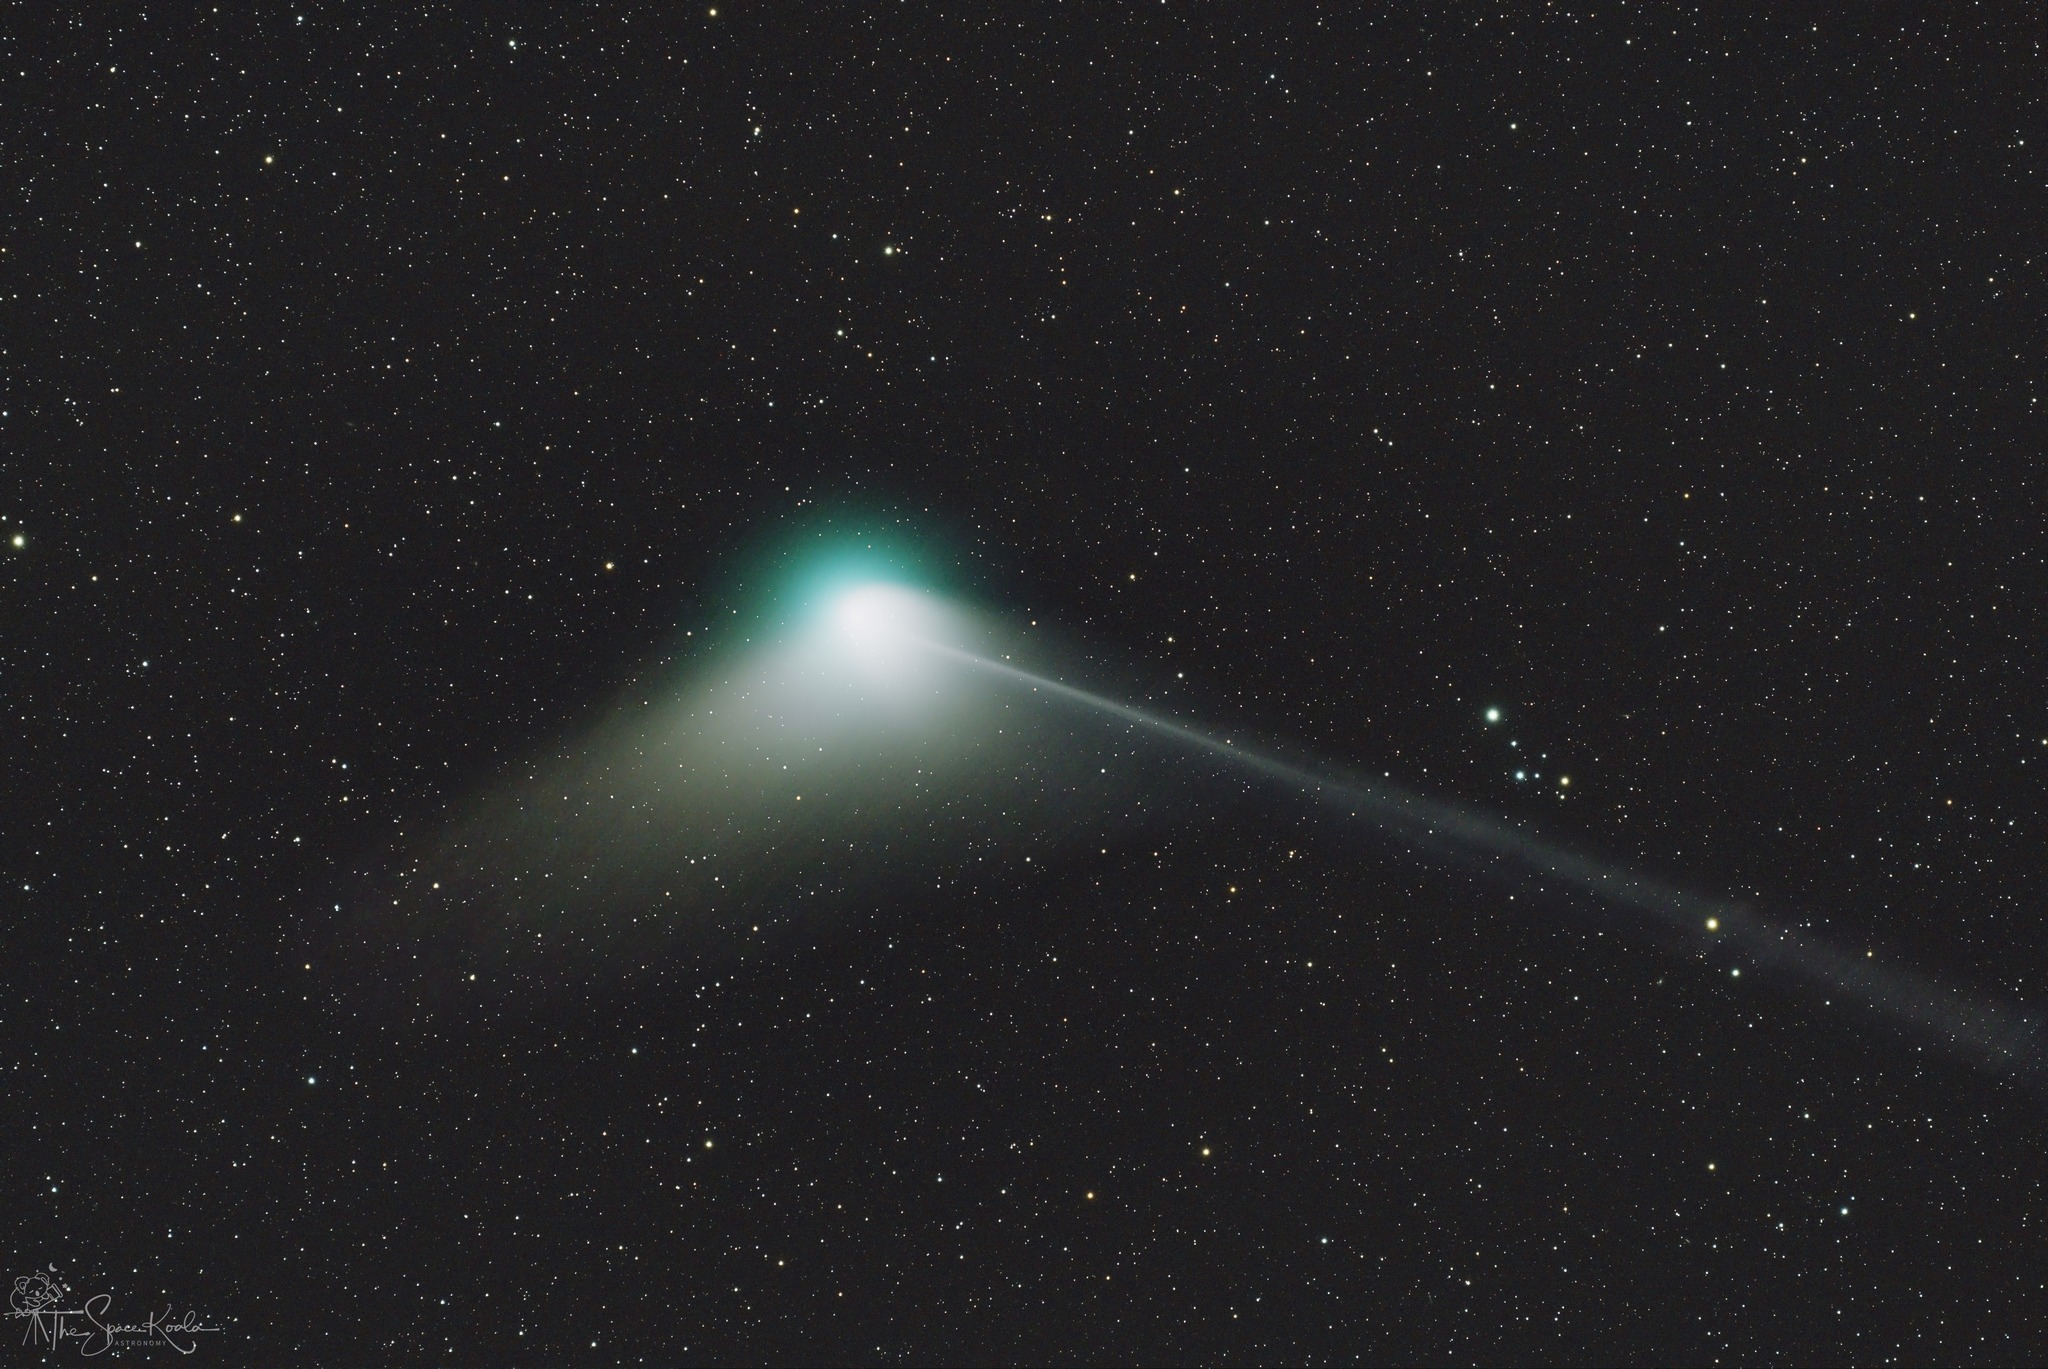 La cometa C/2022 E3 ZTF, definita in modo fantasioso (ed astronomicamente scorretto) come "cometa dei Neanderthal" ripresa dall'Alpe di Gorda